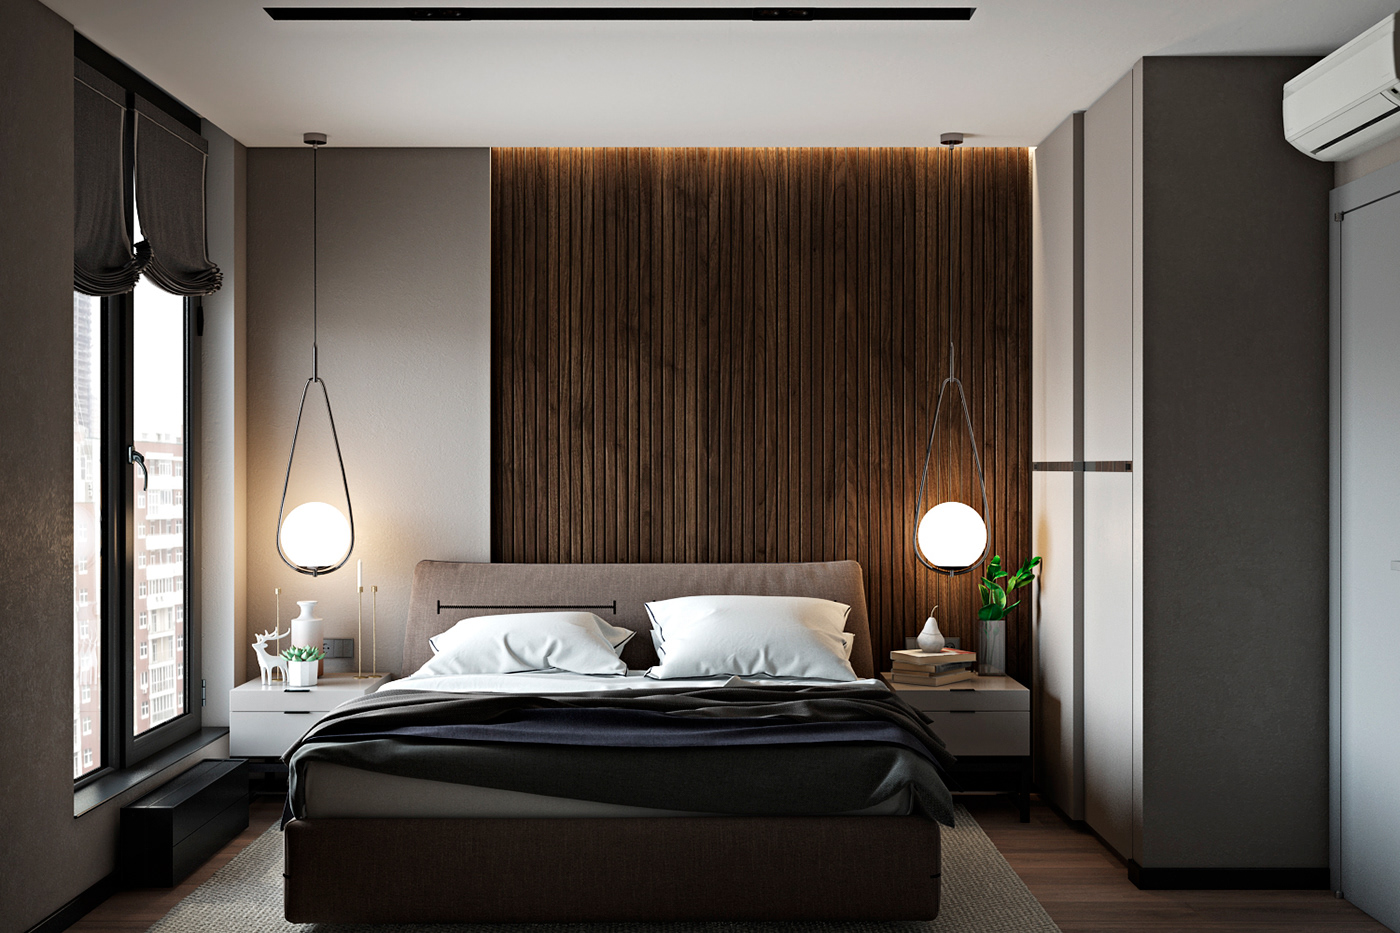 主卧采用木质格栅设计，配以床头灯具，加深了空间联动的精致与美好。